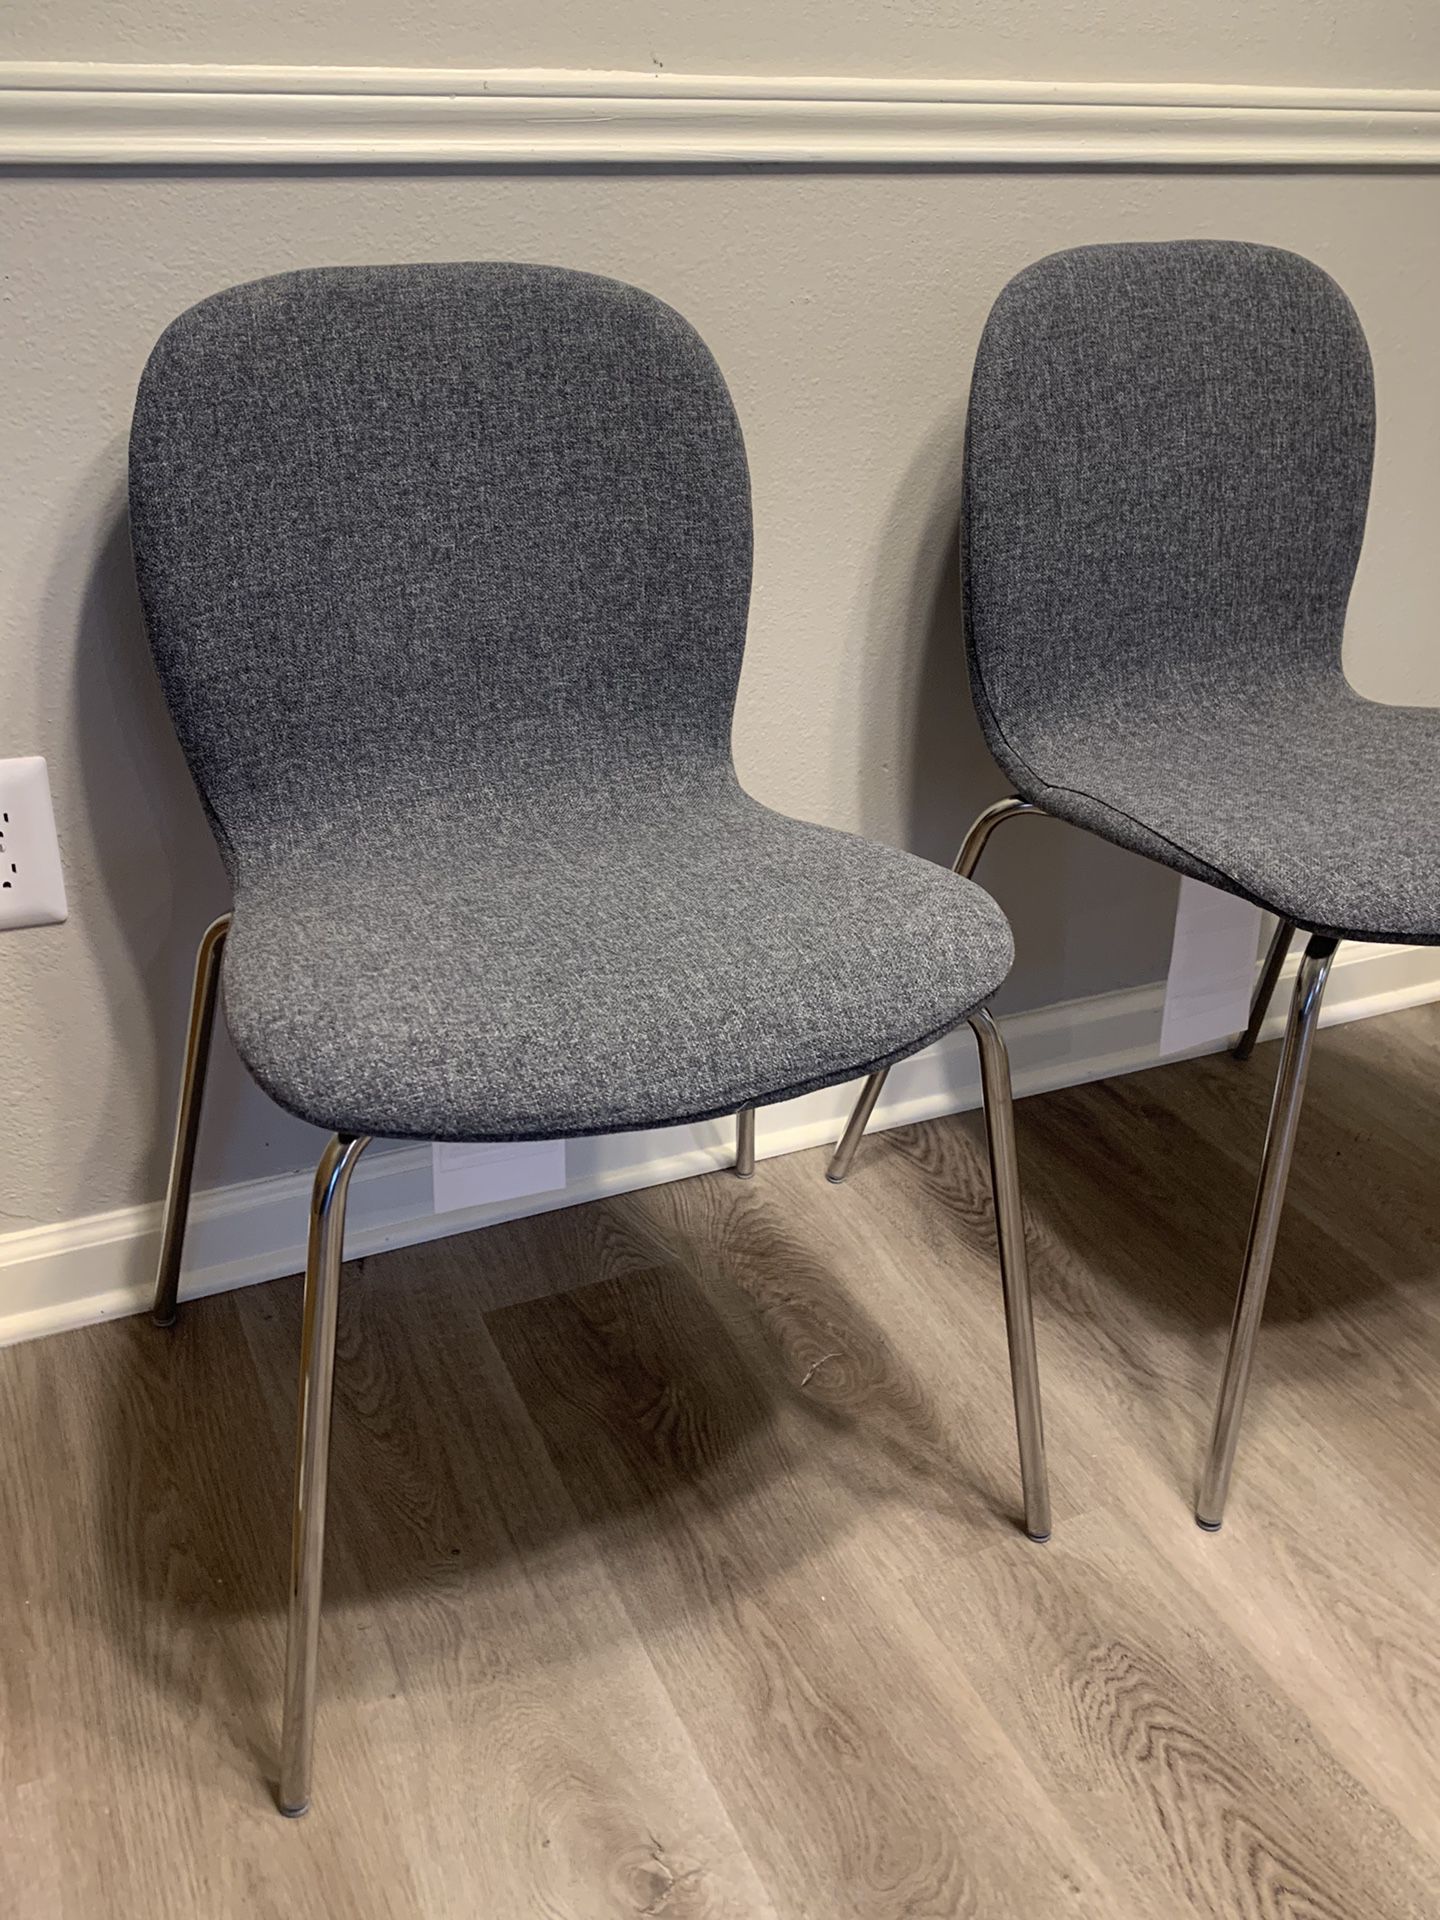 2 Ikea Gray Chairs 